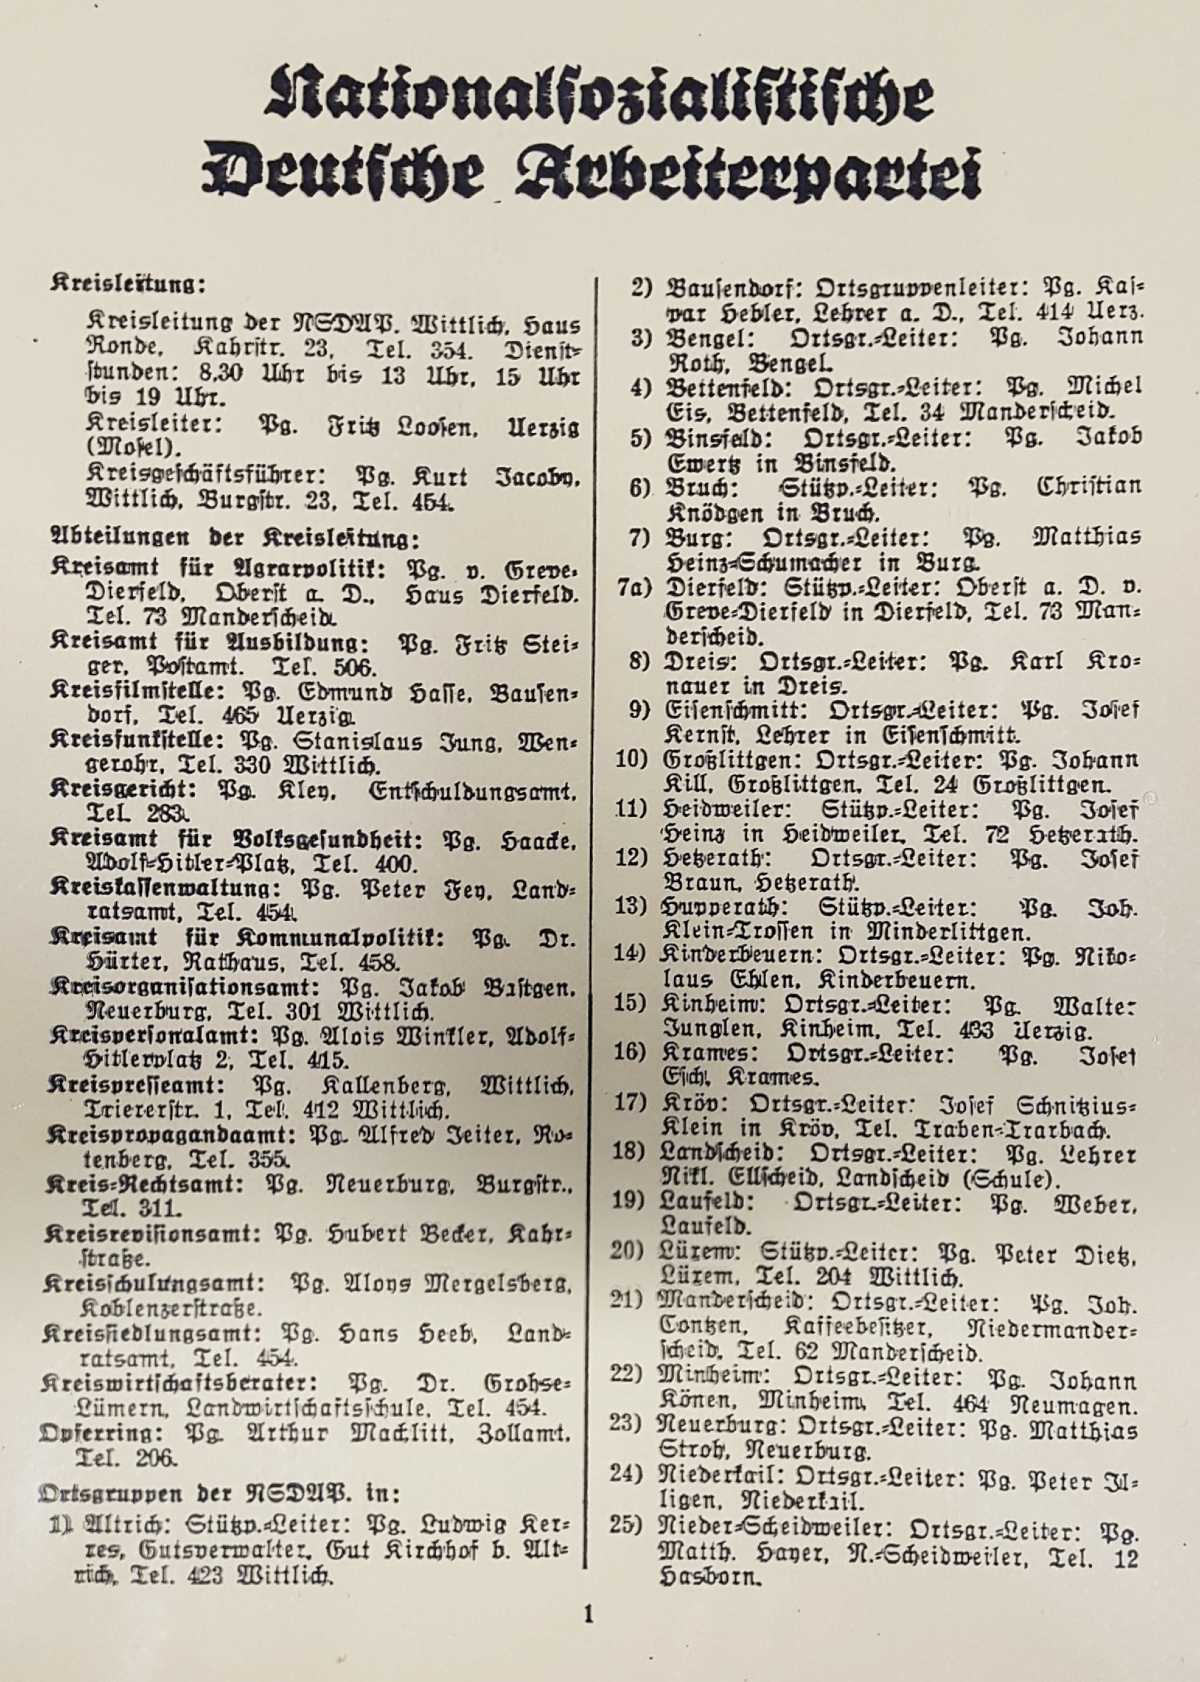 Adressbuch 1937 1 neu 1200